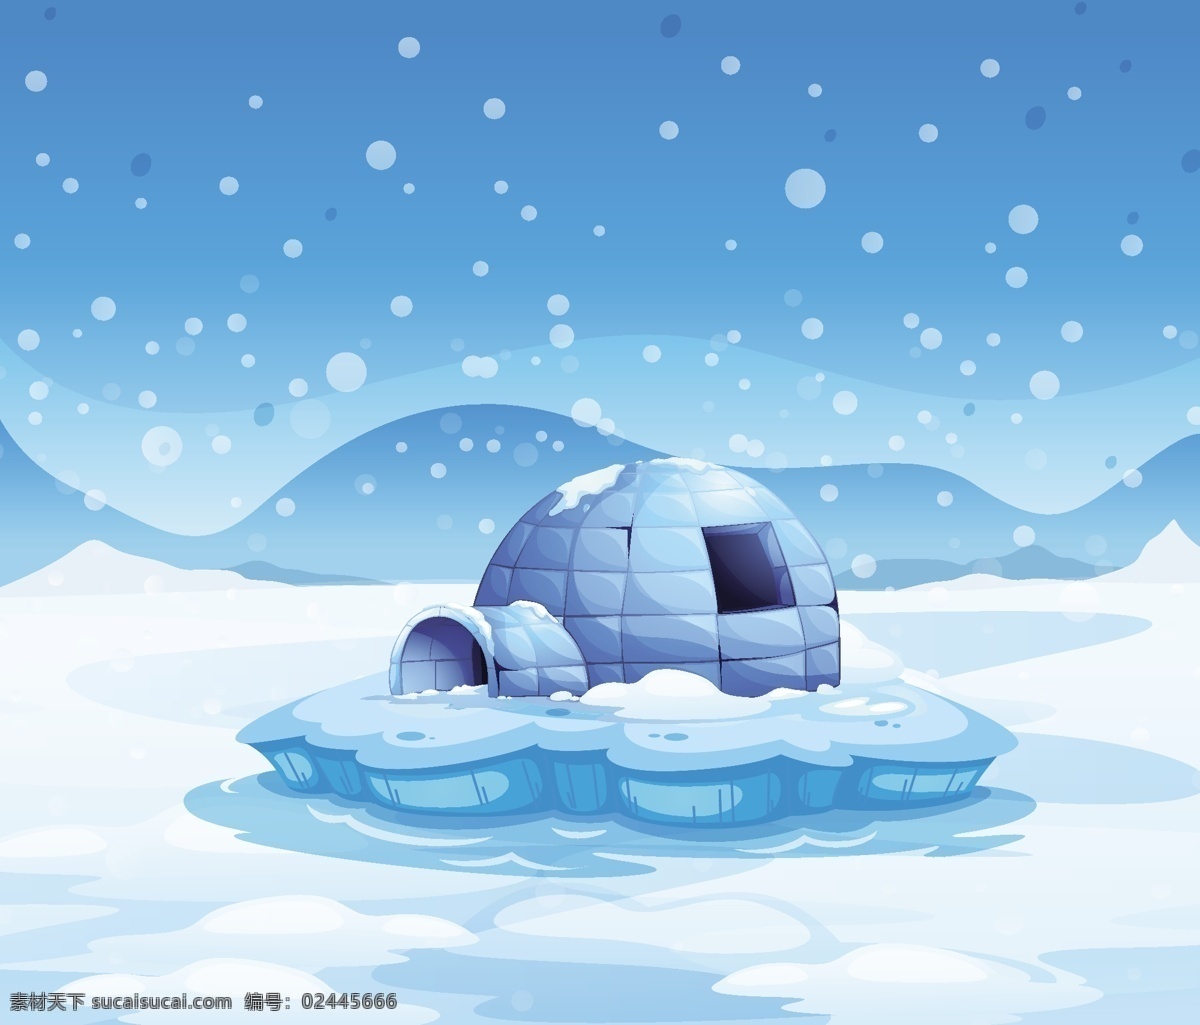 北极 冰 屋 矢量 创意 平面设计 矢量素材 设计素材 背景素材 冰屋